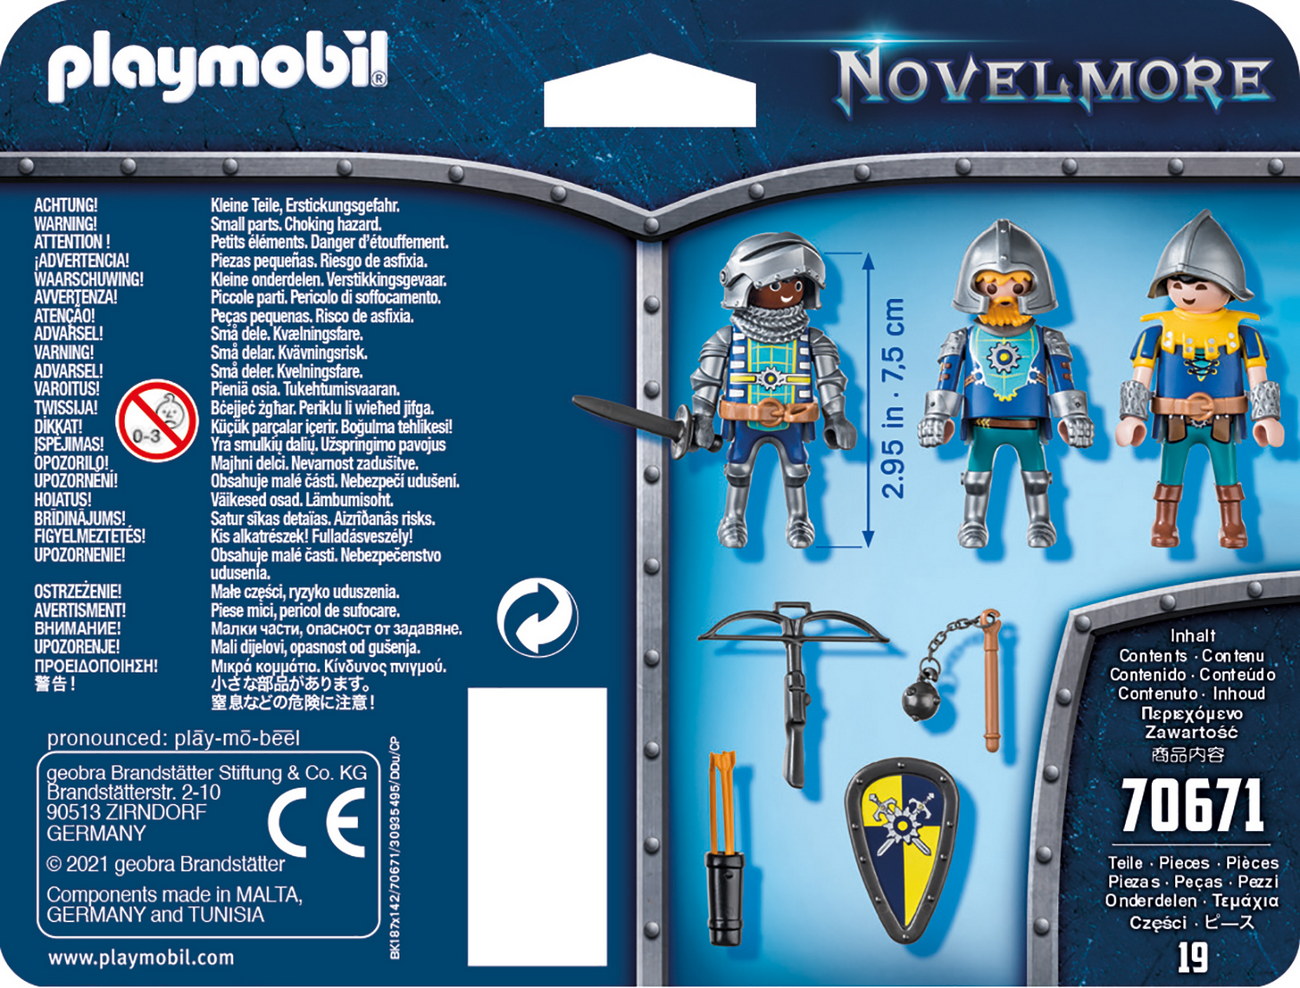 Playmobil 70671 - 3er Set Novelmore Ritter - Novelmore